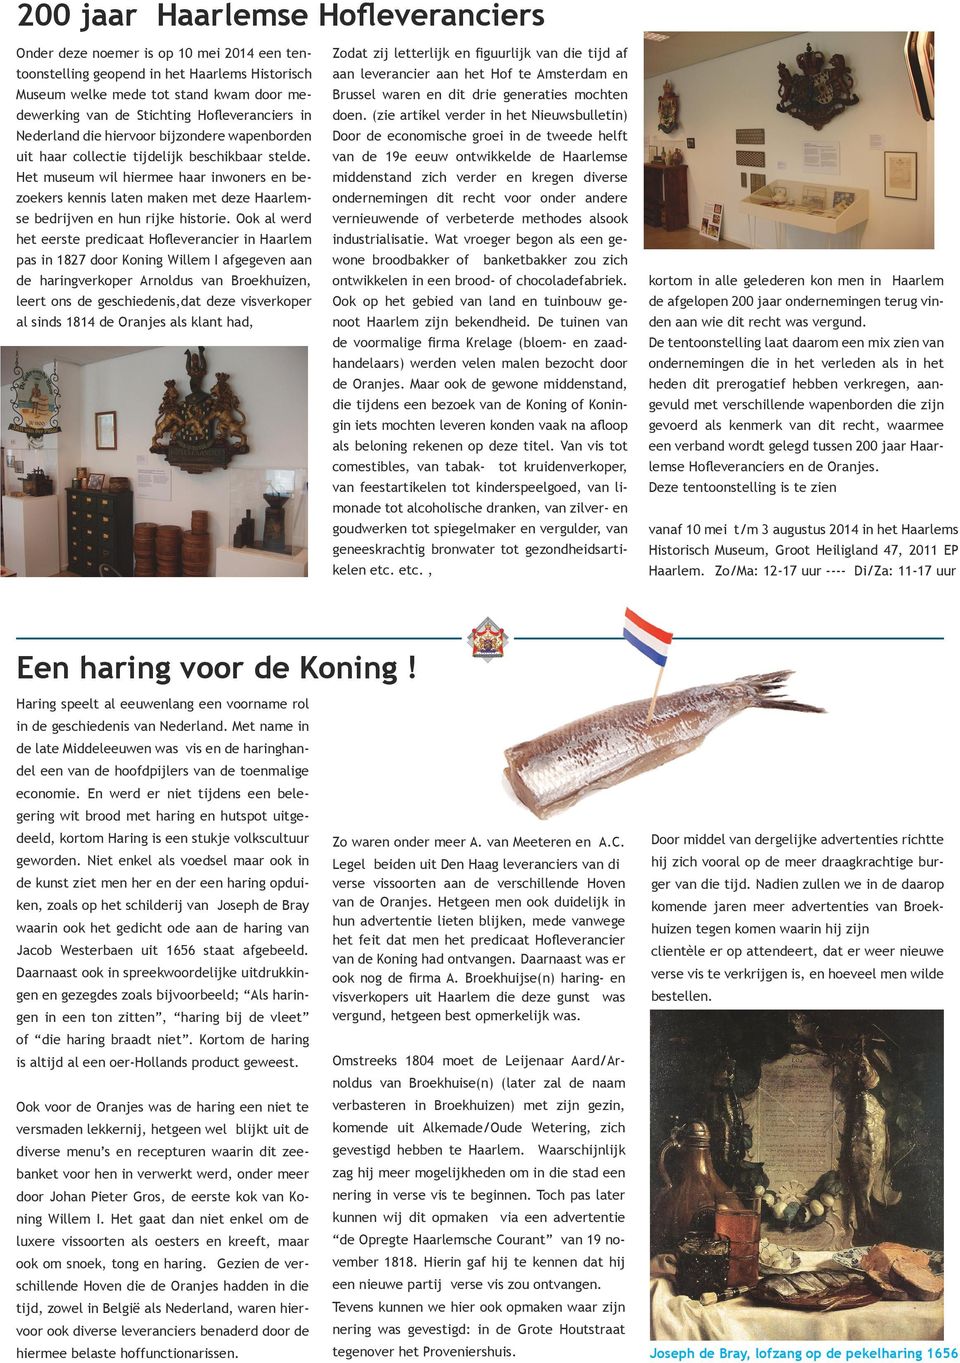 Het museum wil hiermee haar inwoners en bezoekers kennis laten maken met deze Haarlemse bedrijven en hun rijke historie.